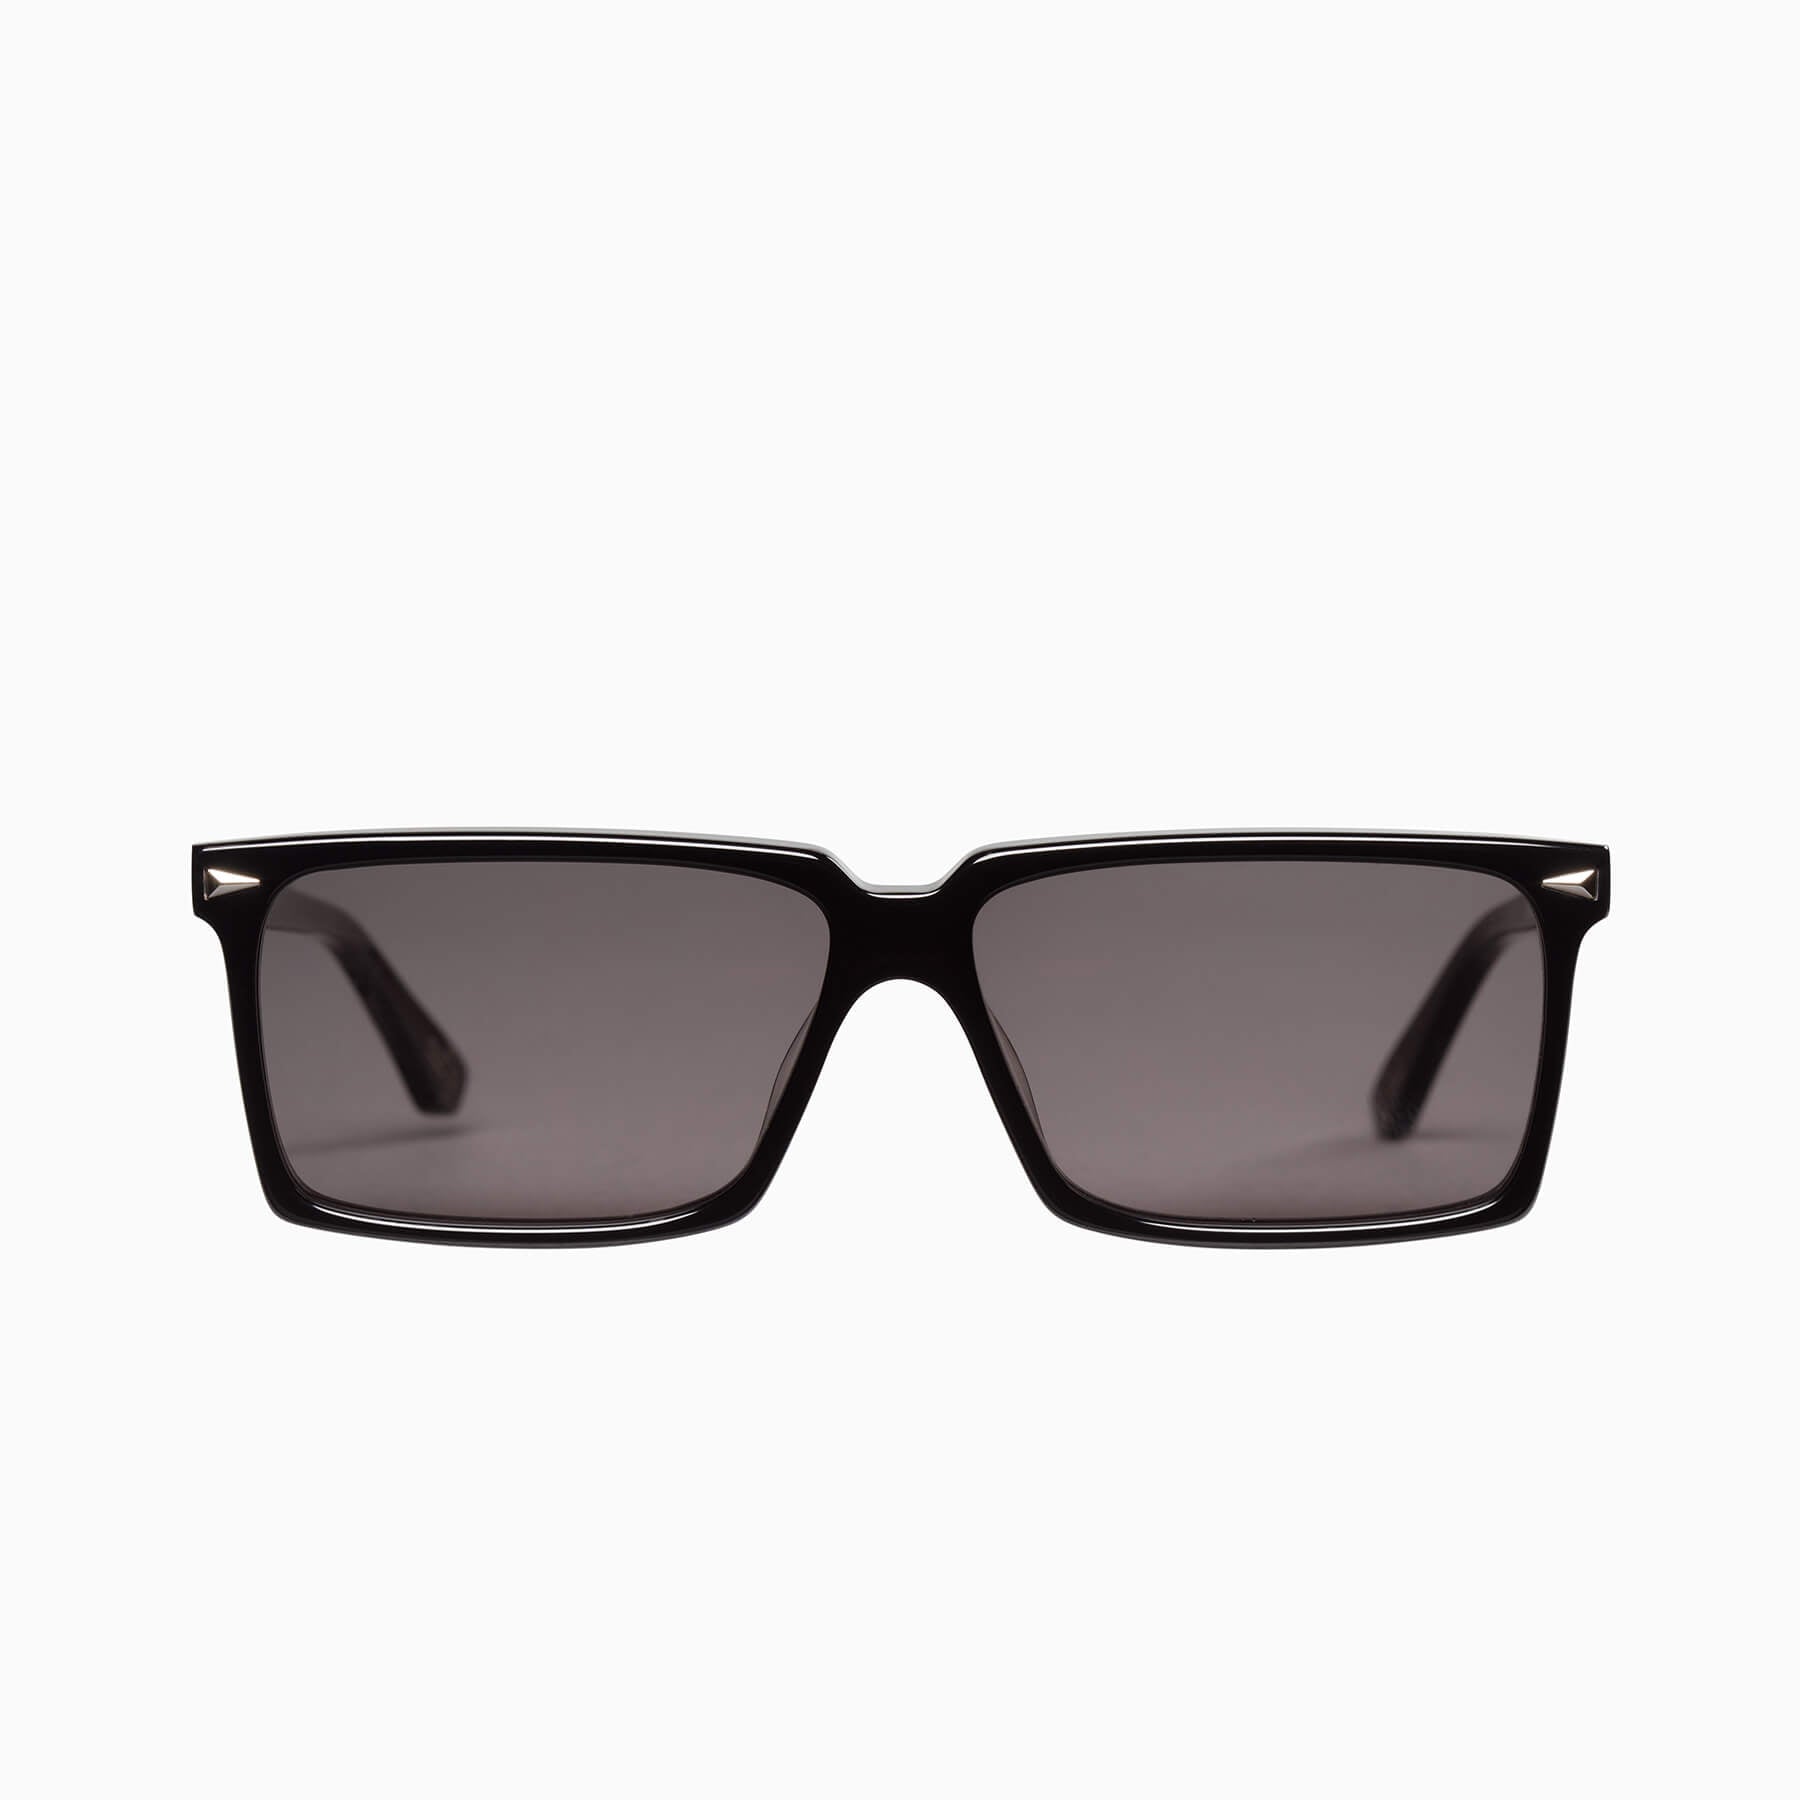 Louis Vuitton LV Link Light Classic Square Sunglasses Black Acetate & Metal. Size W